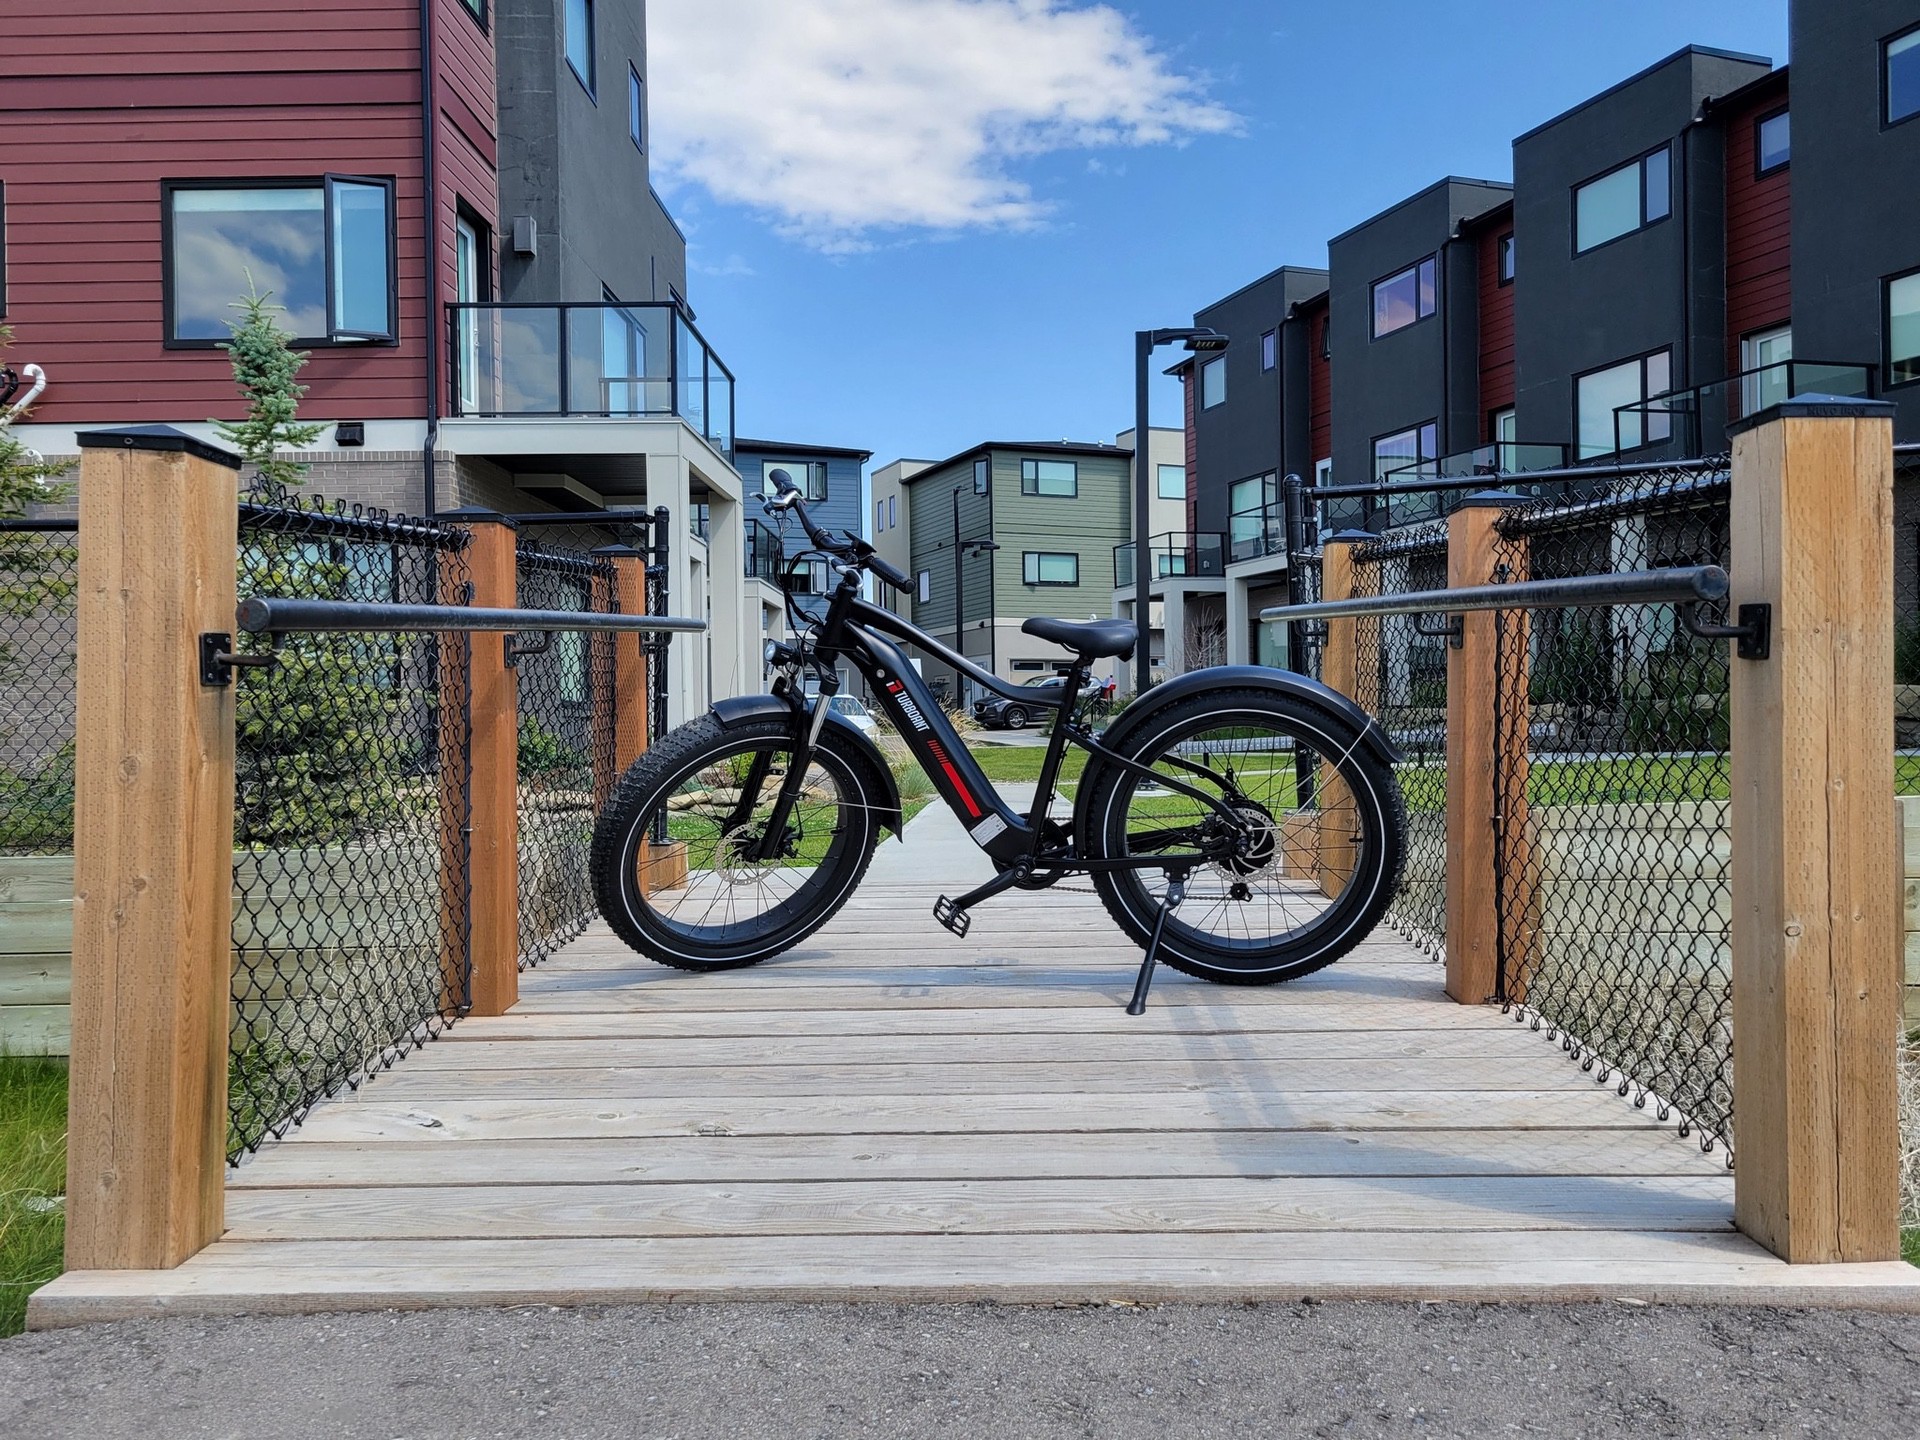 TurboAnt Nebula N1 Electric Bike on wooden bridge